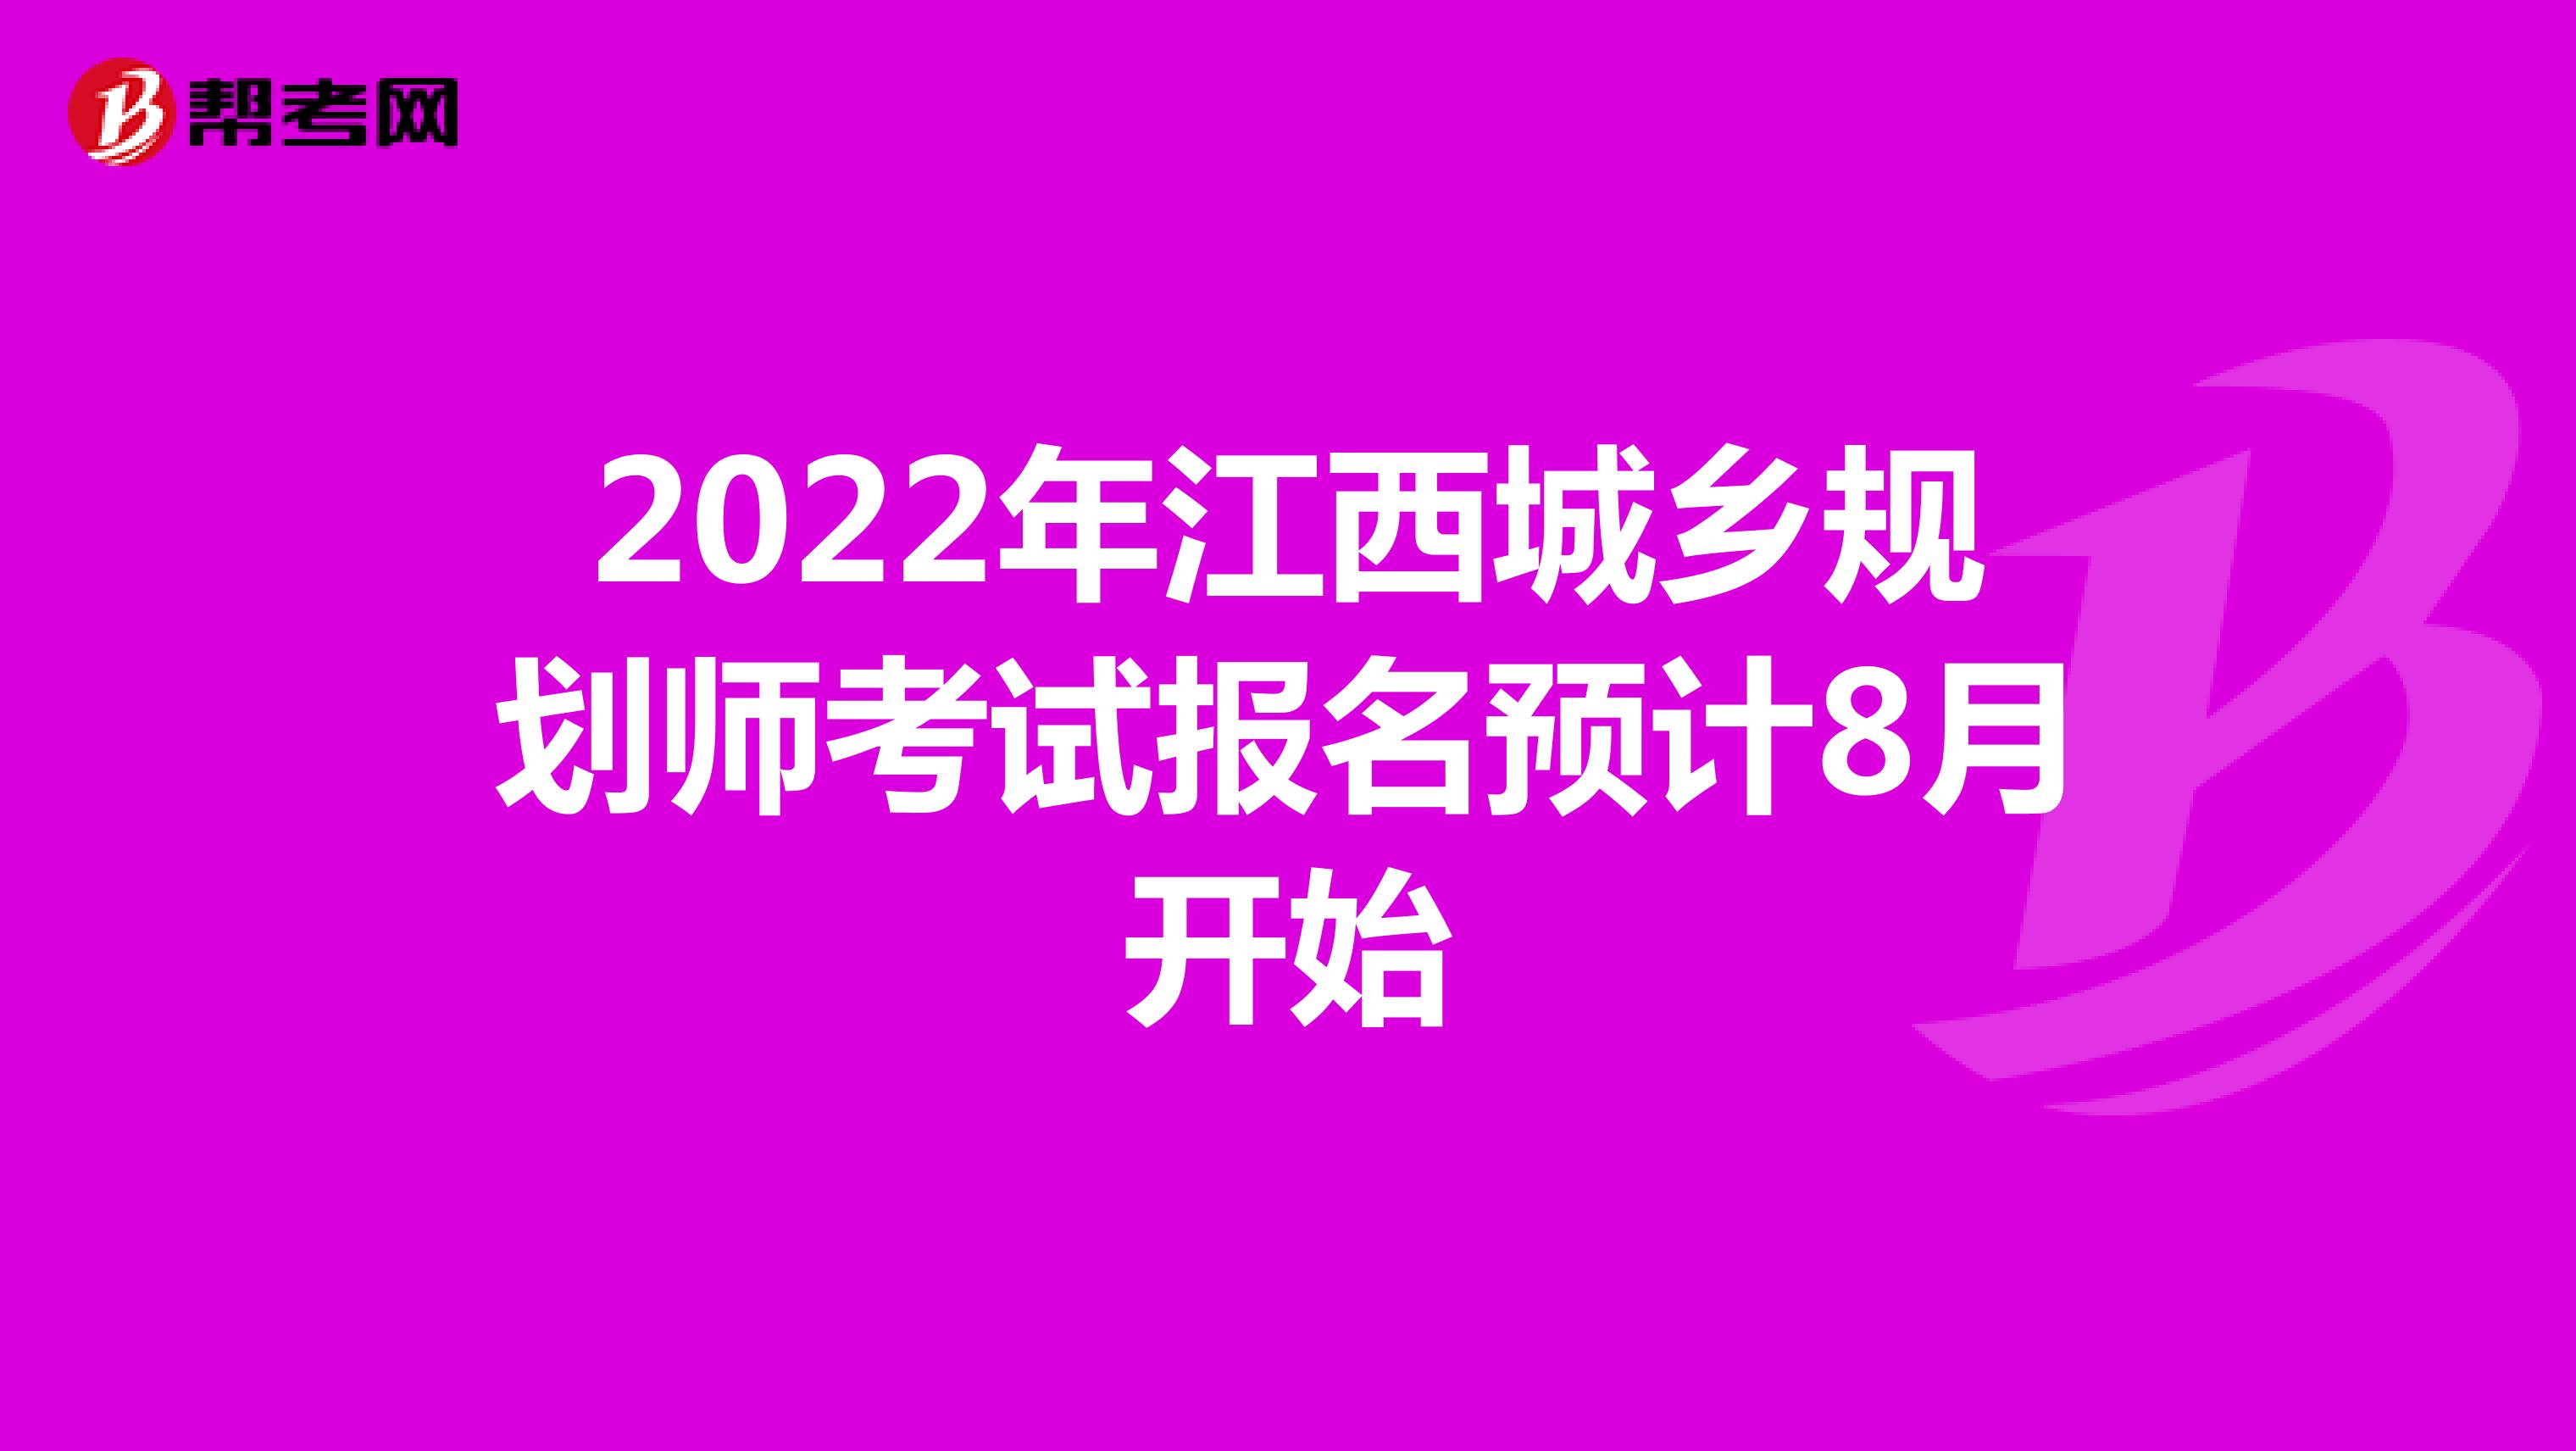 2022年江西城乡规划师考试报名预计8月开始